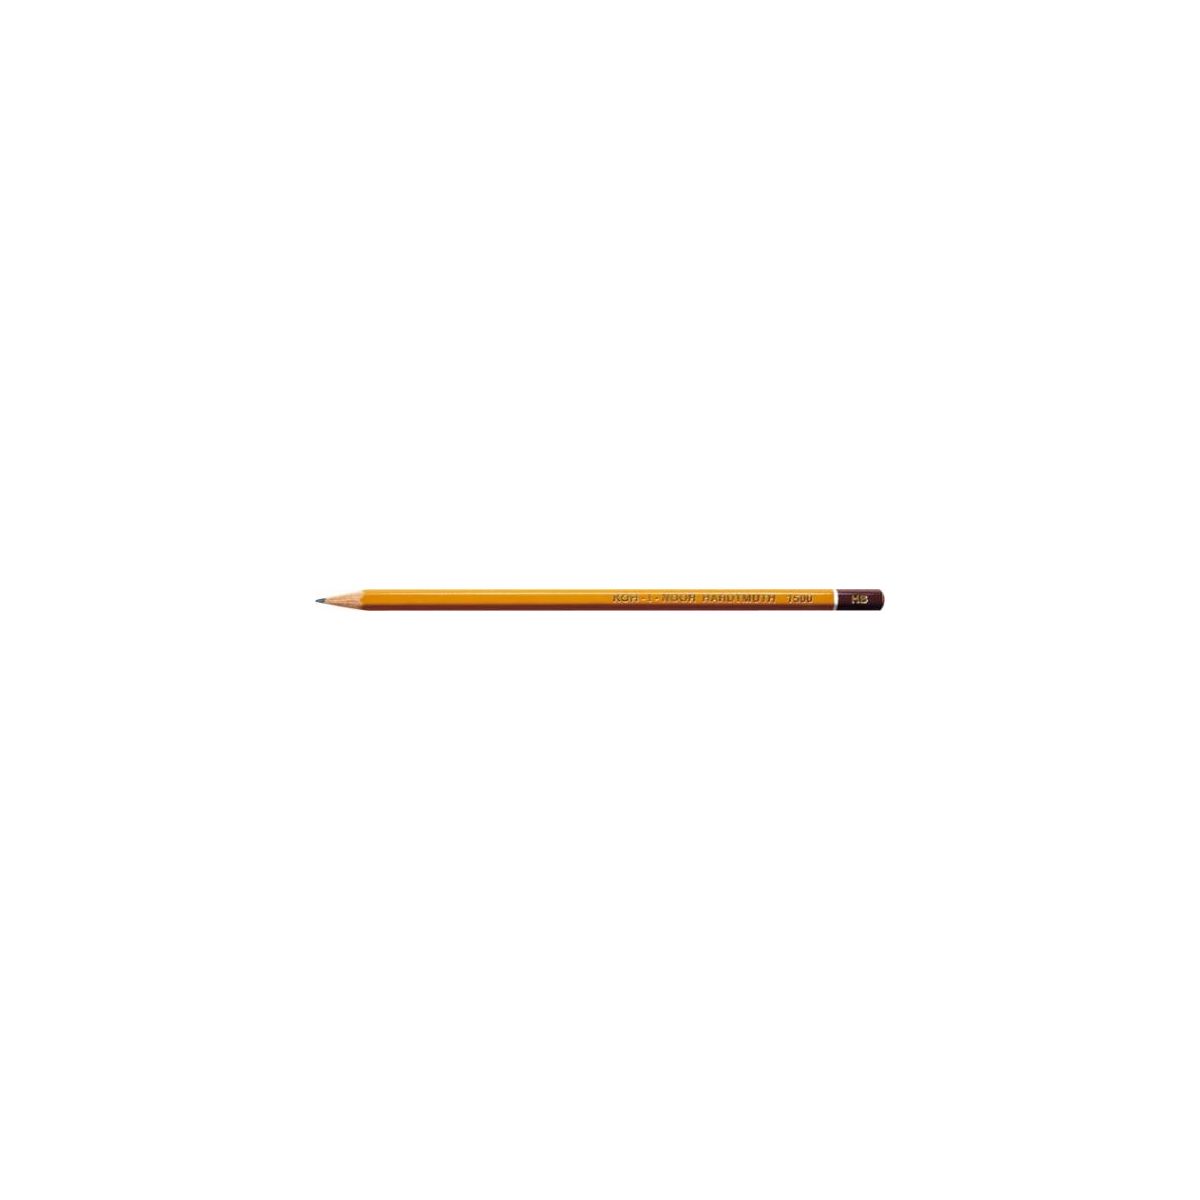 Ołówek Koh-I-Noor 1500 2H